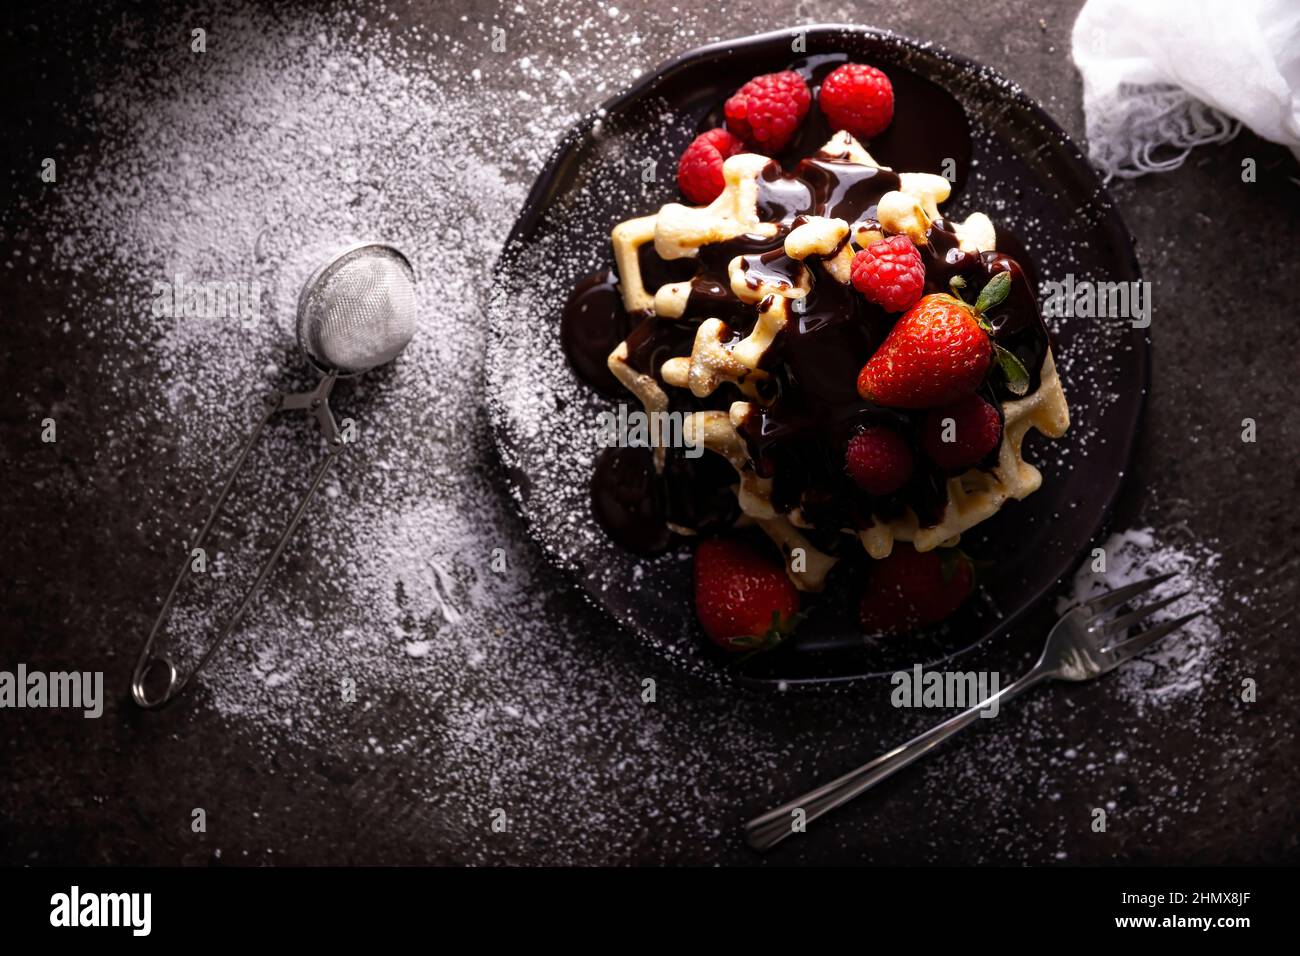 Blick von oben auf hausgemachte Waffeln mit Schokolade, Puderzucker, Erdbeeren und Himbeeren auf dunklem Gericht. Chaotisch aussehen flach liegen. Stockfoto